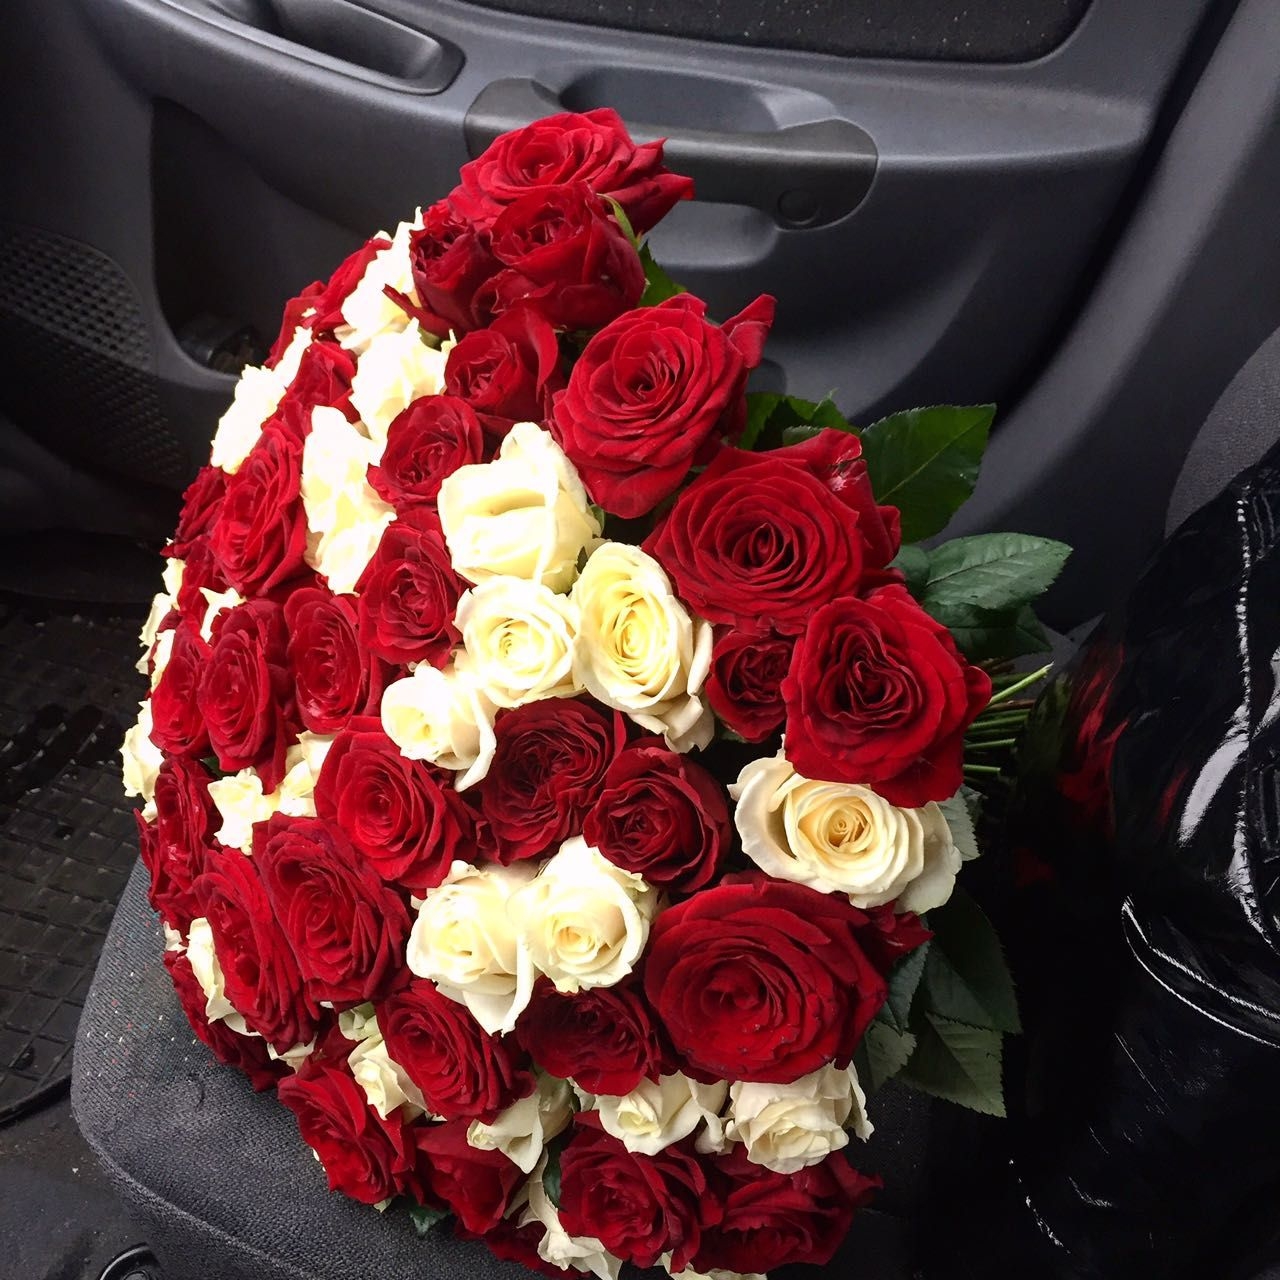 Букет роз в машине (67 фото)